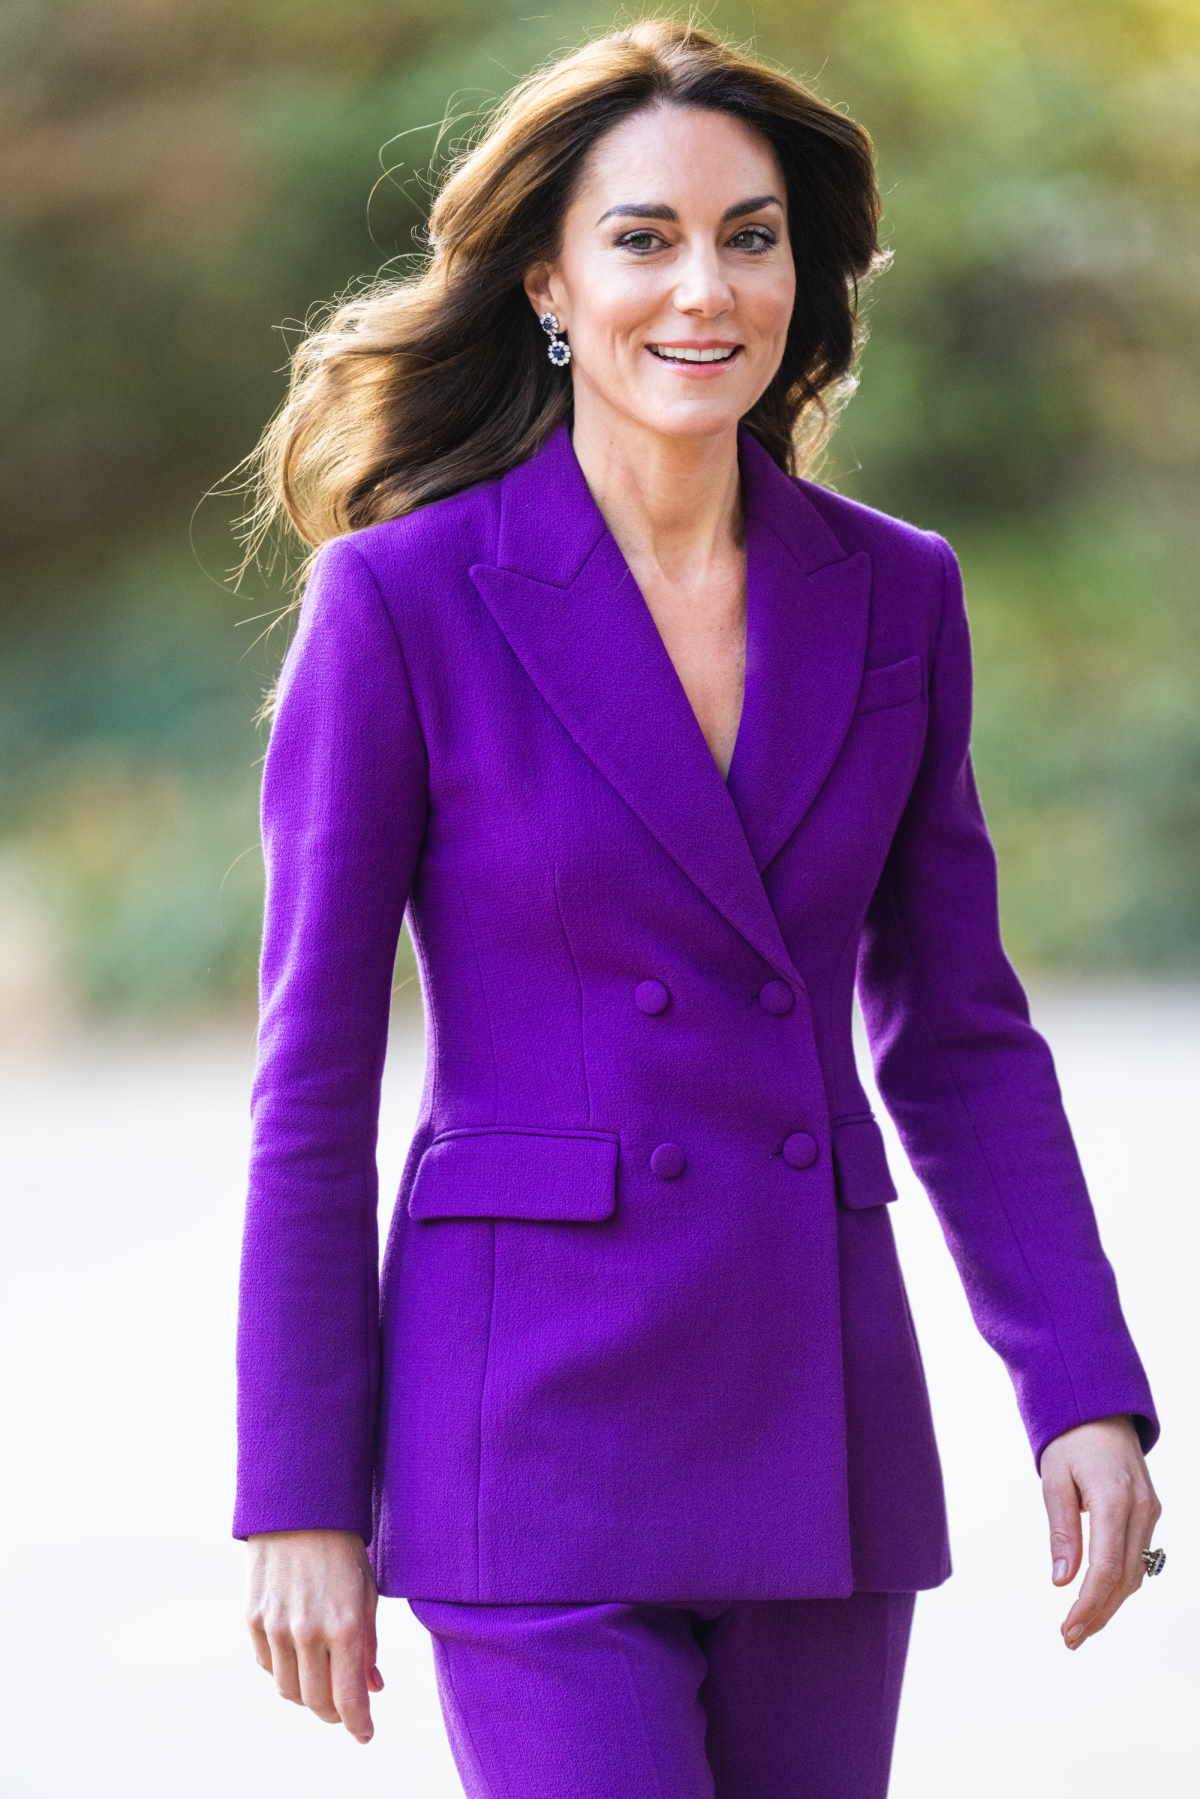 Księżna Kate w garniturze w królewskim odcieniu fioletu. Księżna Kate pojawiła się na londyńskim wydarzeniu w ulubionym fioletowym garniturze projektu Emilii Wickstead.